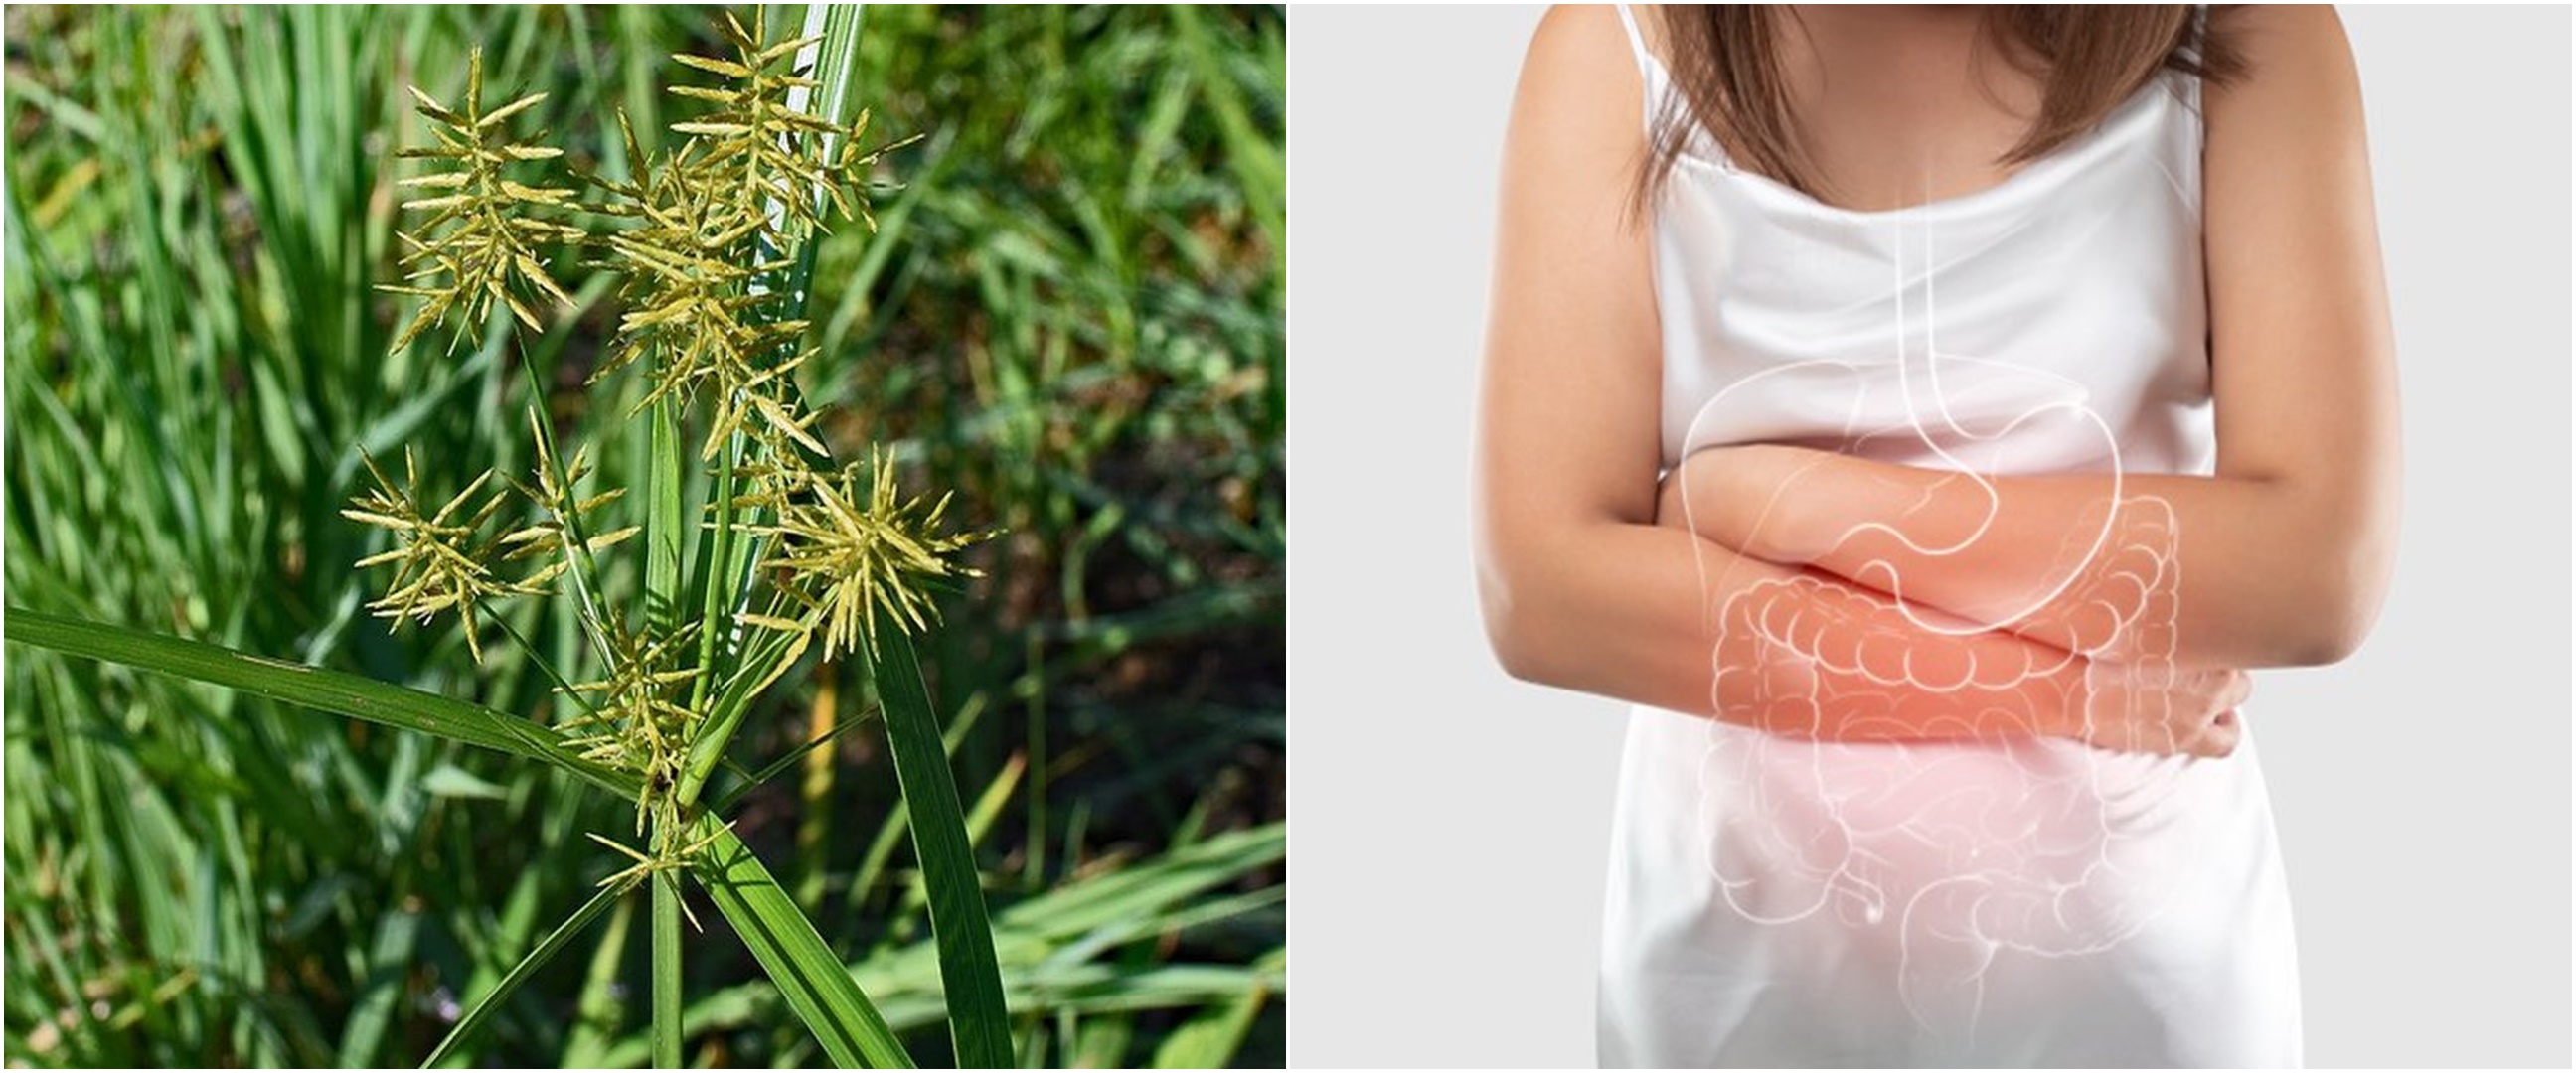 10 Manfaat rumput teki untuk kesehatan, bisa mengatasi diare